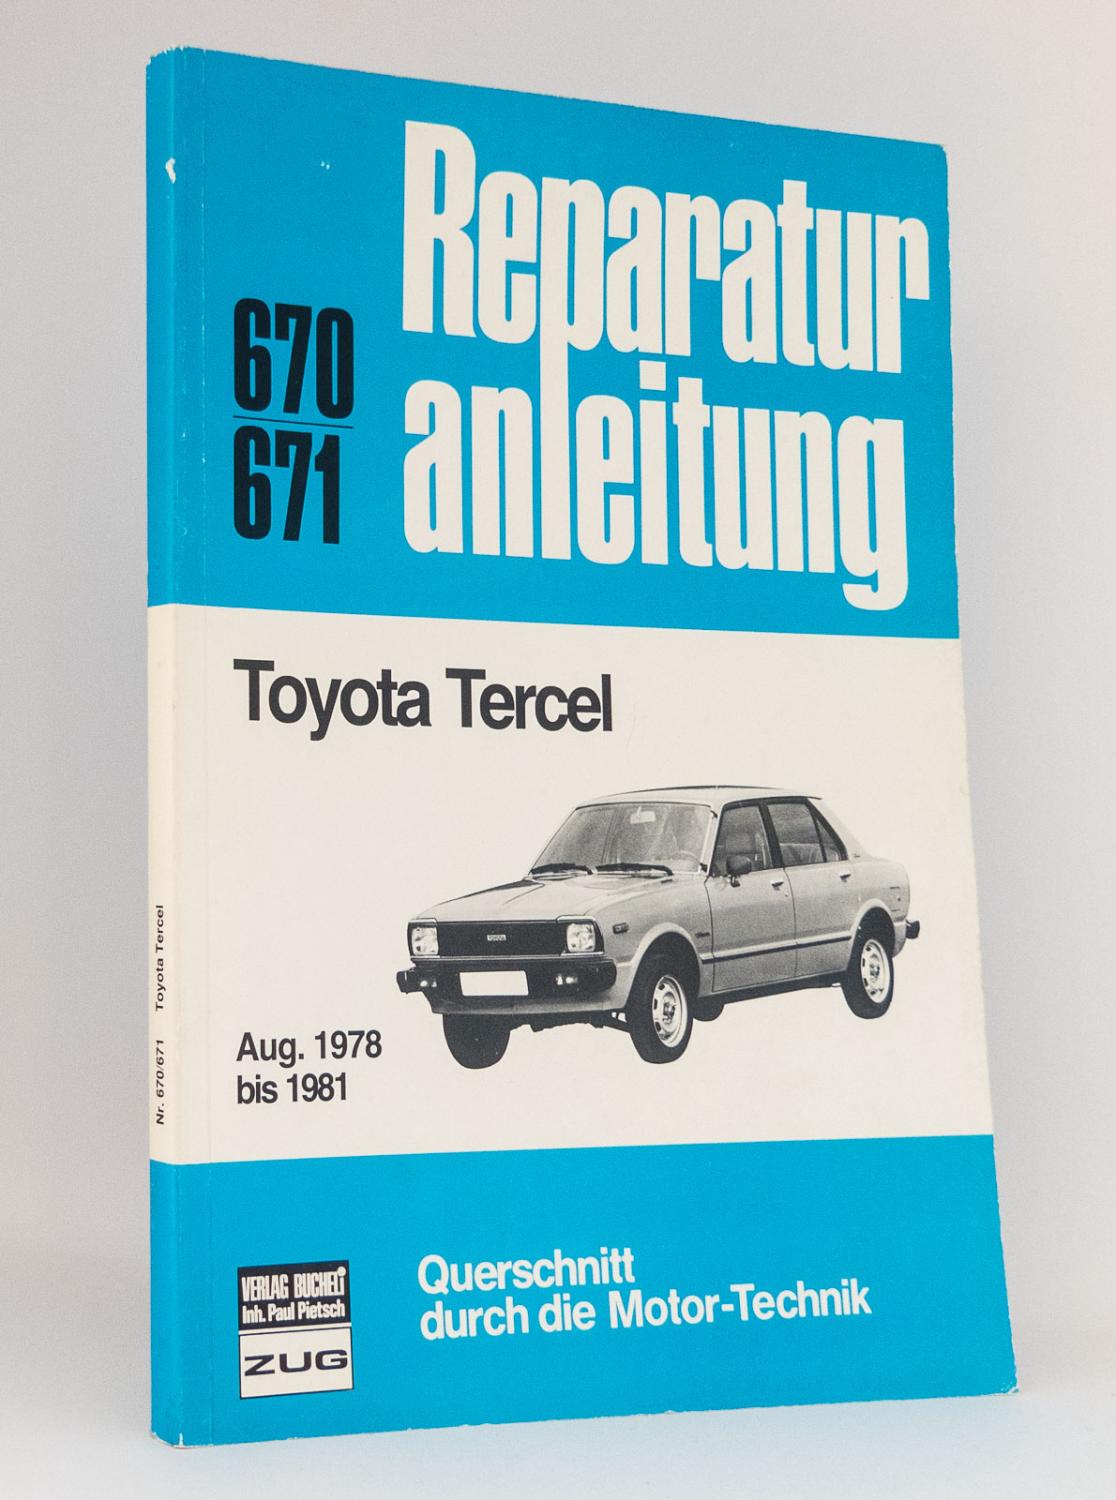 Reparaturanleitung Toyota Tercel (Nr. 670/671, August 1978 bis 1981) - Ohne Autorenangabe